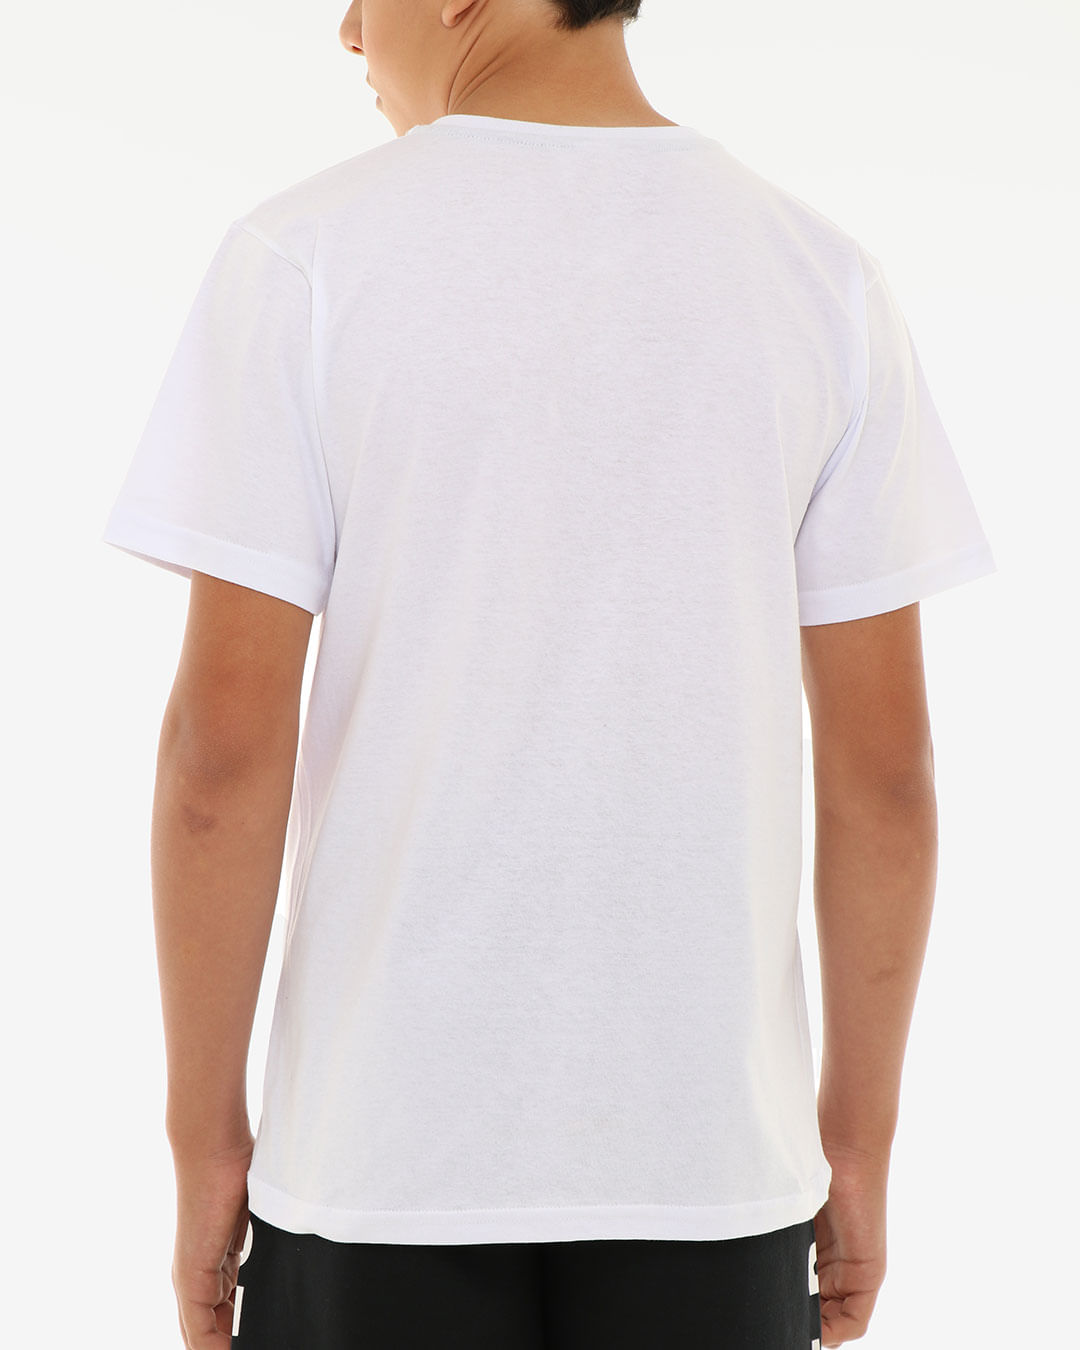 Camiseta-Juvenil-Manga-Curta-Estampa-Controle-Branca